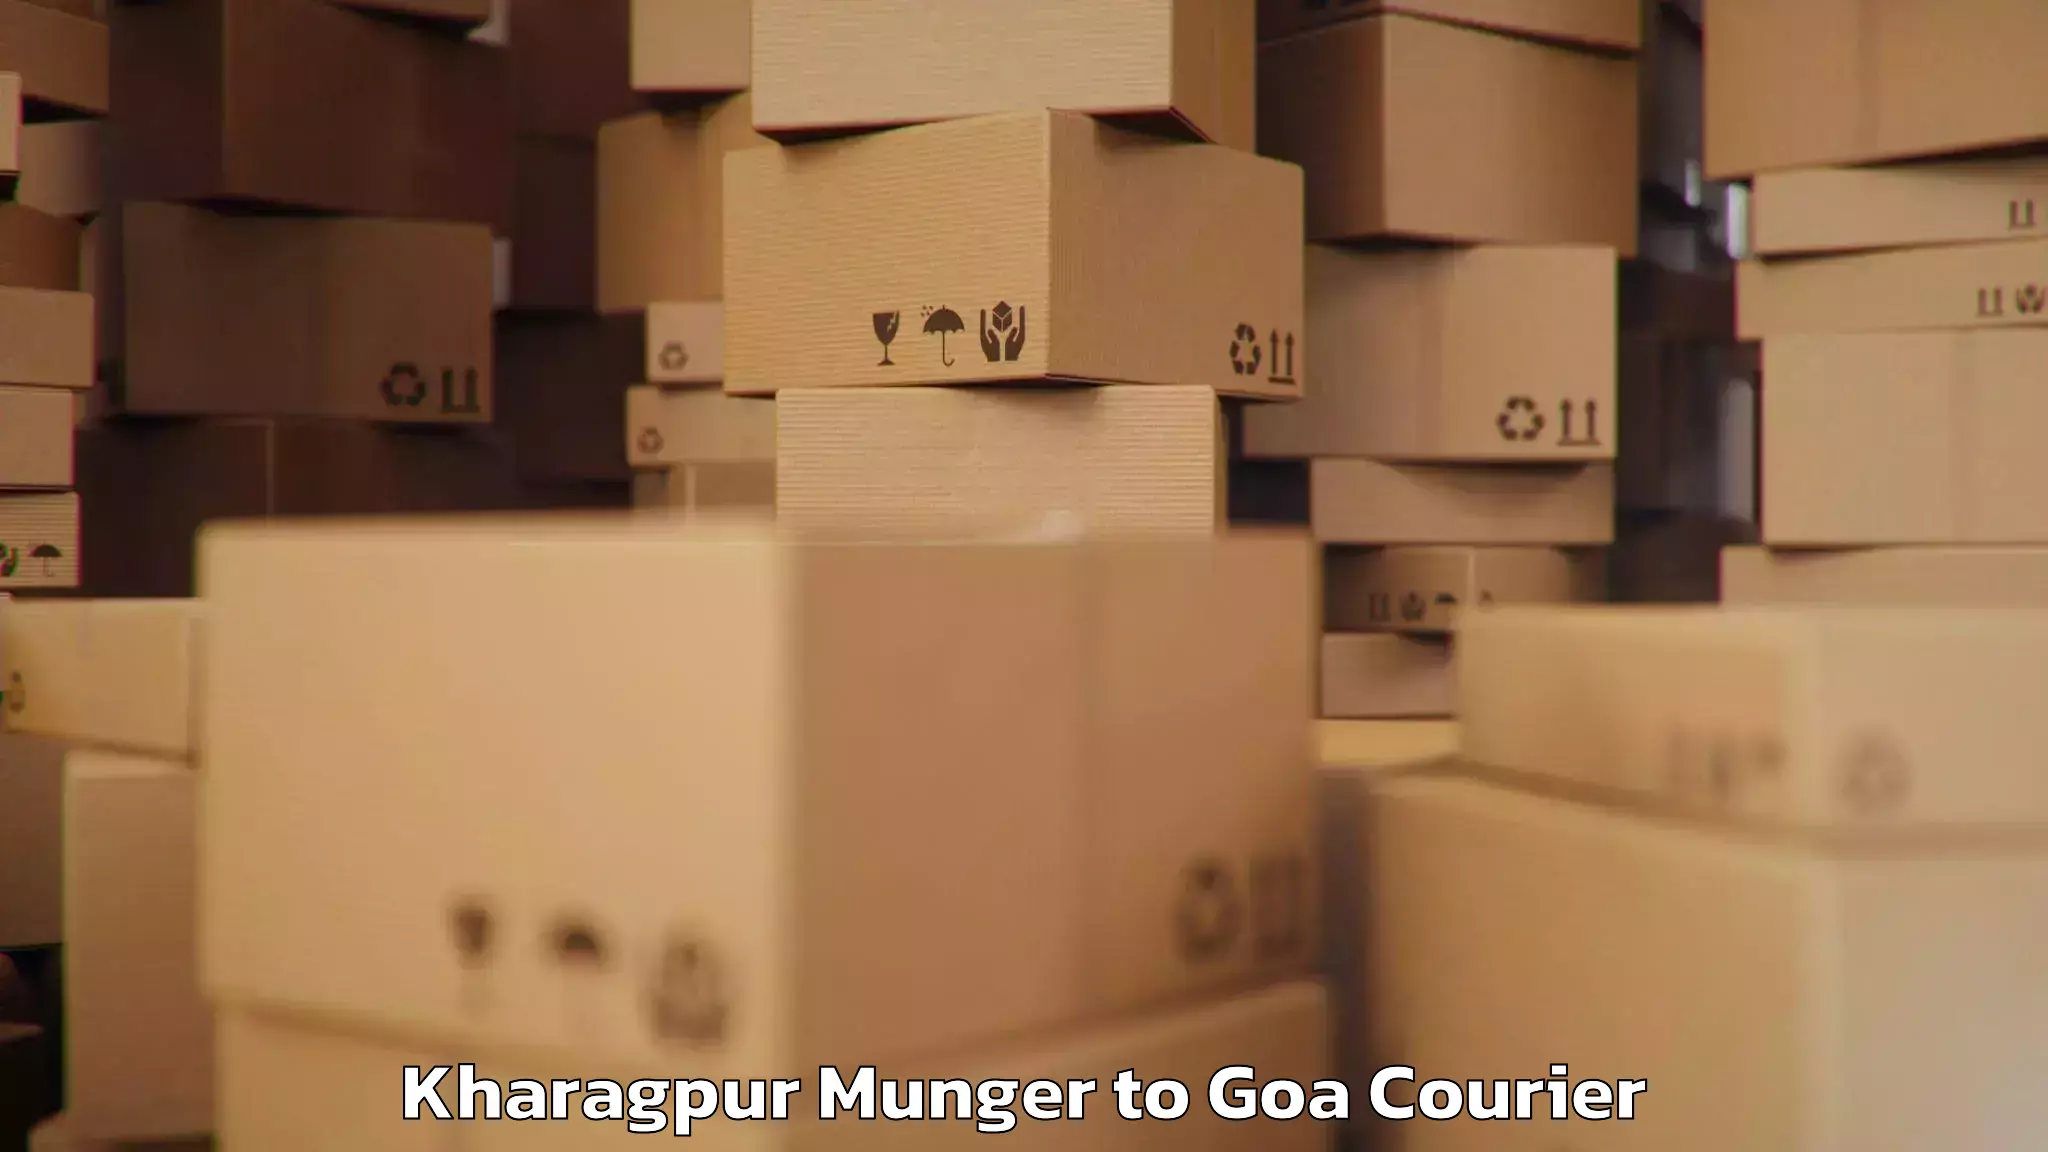 Luggage transport company Kharagpur Munger to Goa